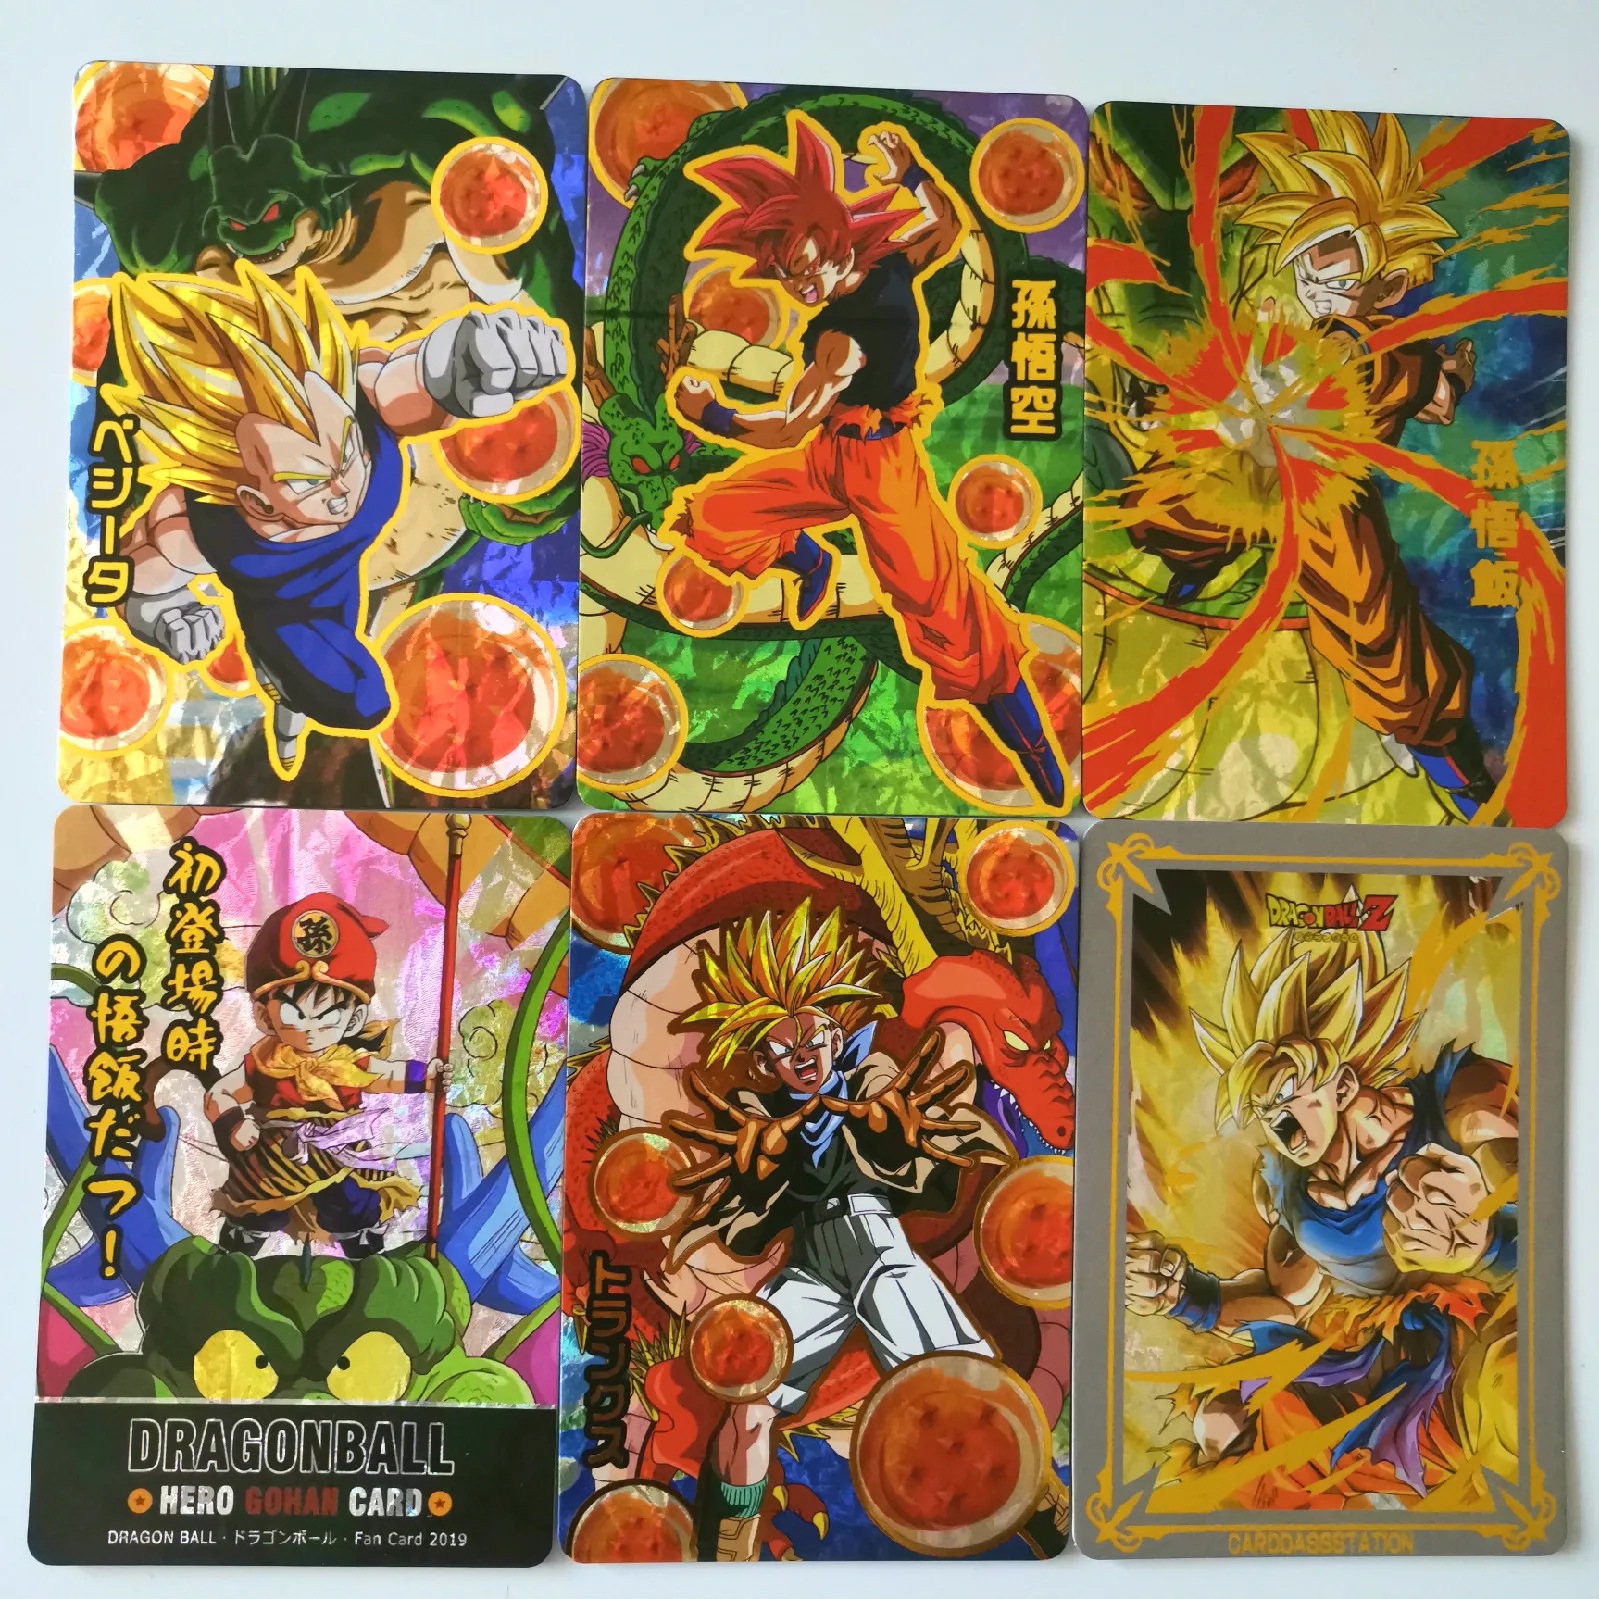 32 шт./компл. Новая супер Dragon Ball-Z горячая штамповка процесс герои битва карта ультра Instinct Гоку Вегета игра Коллекция аниме-открытки